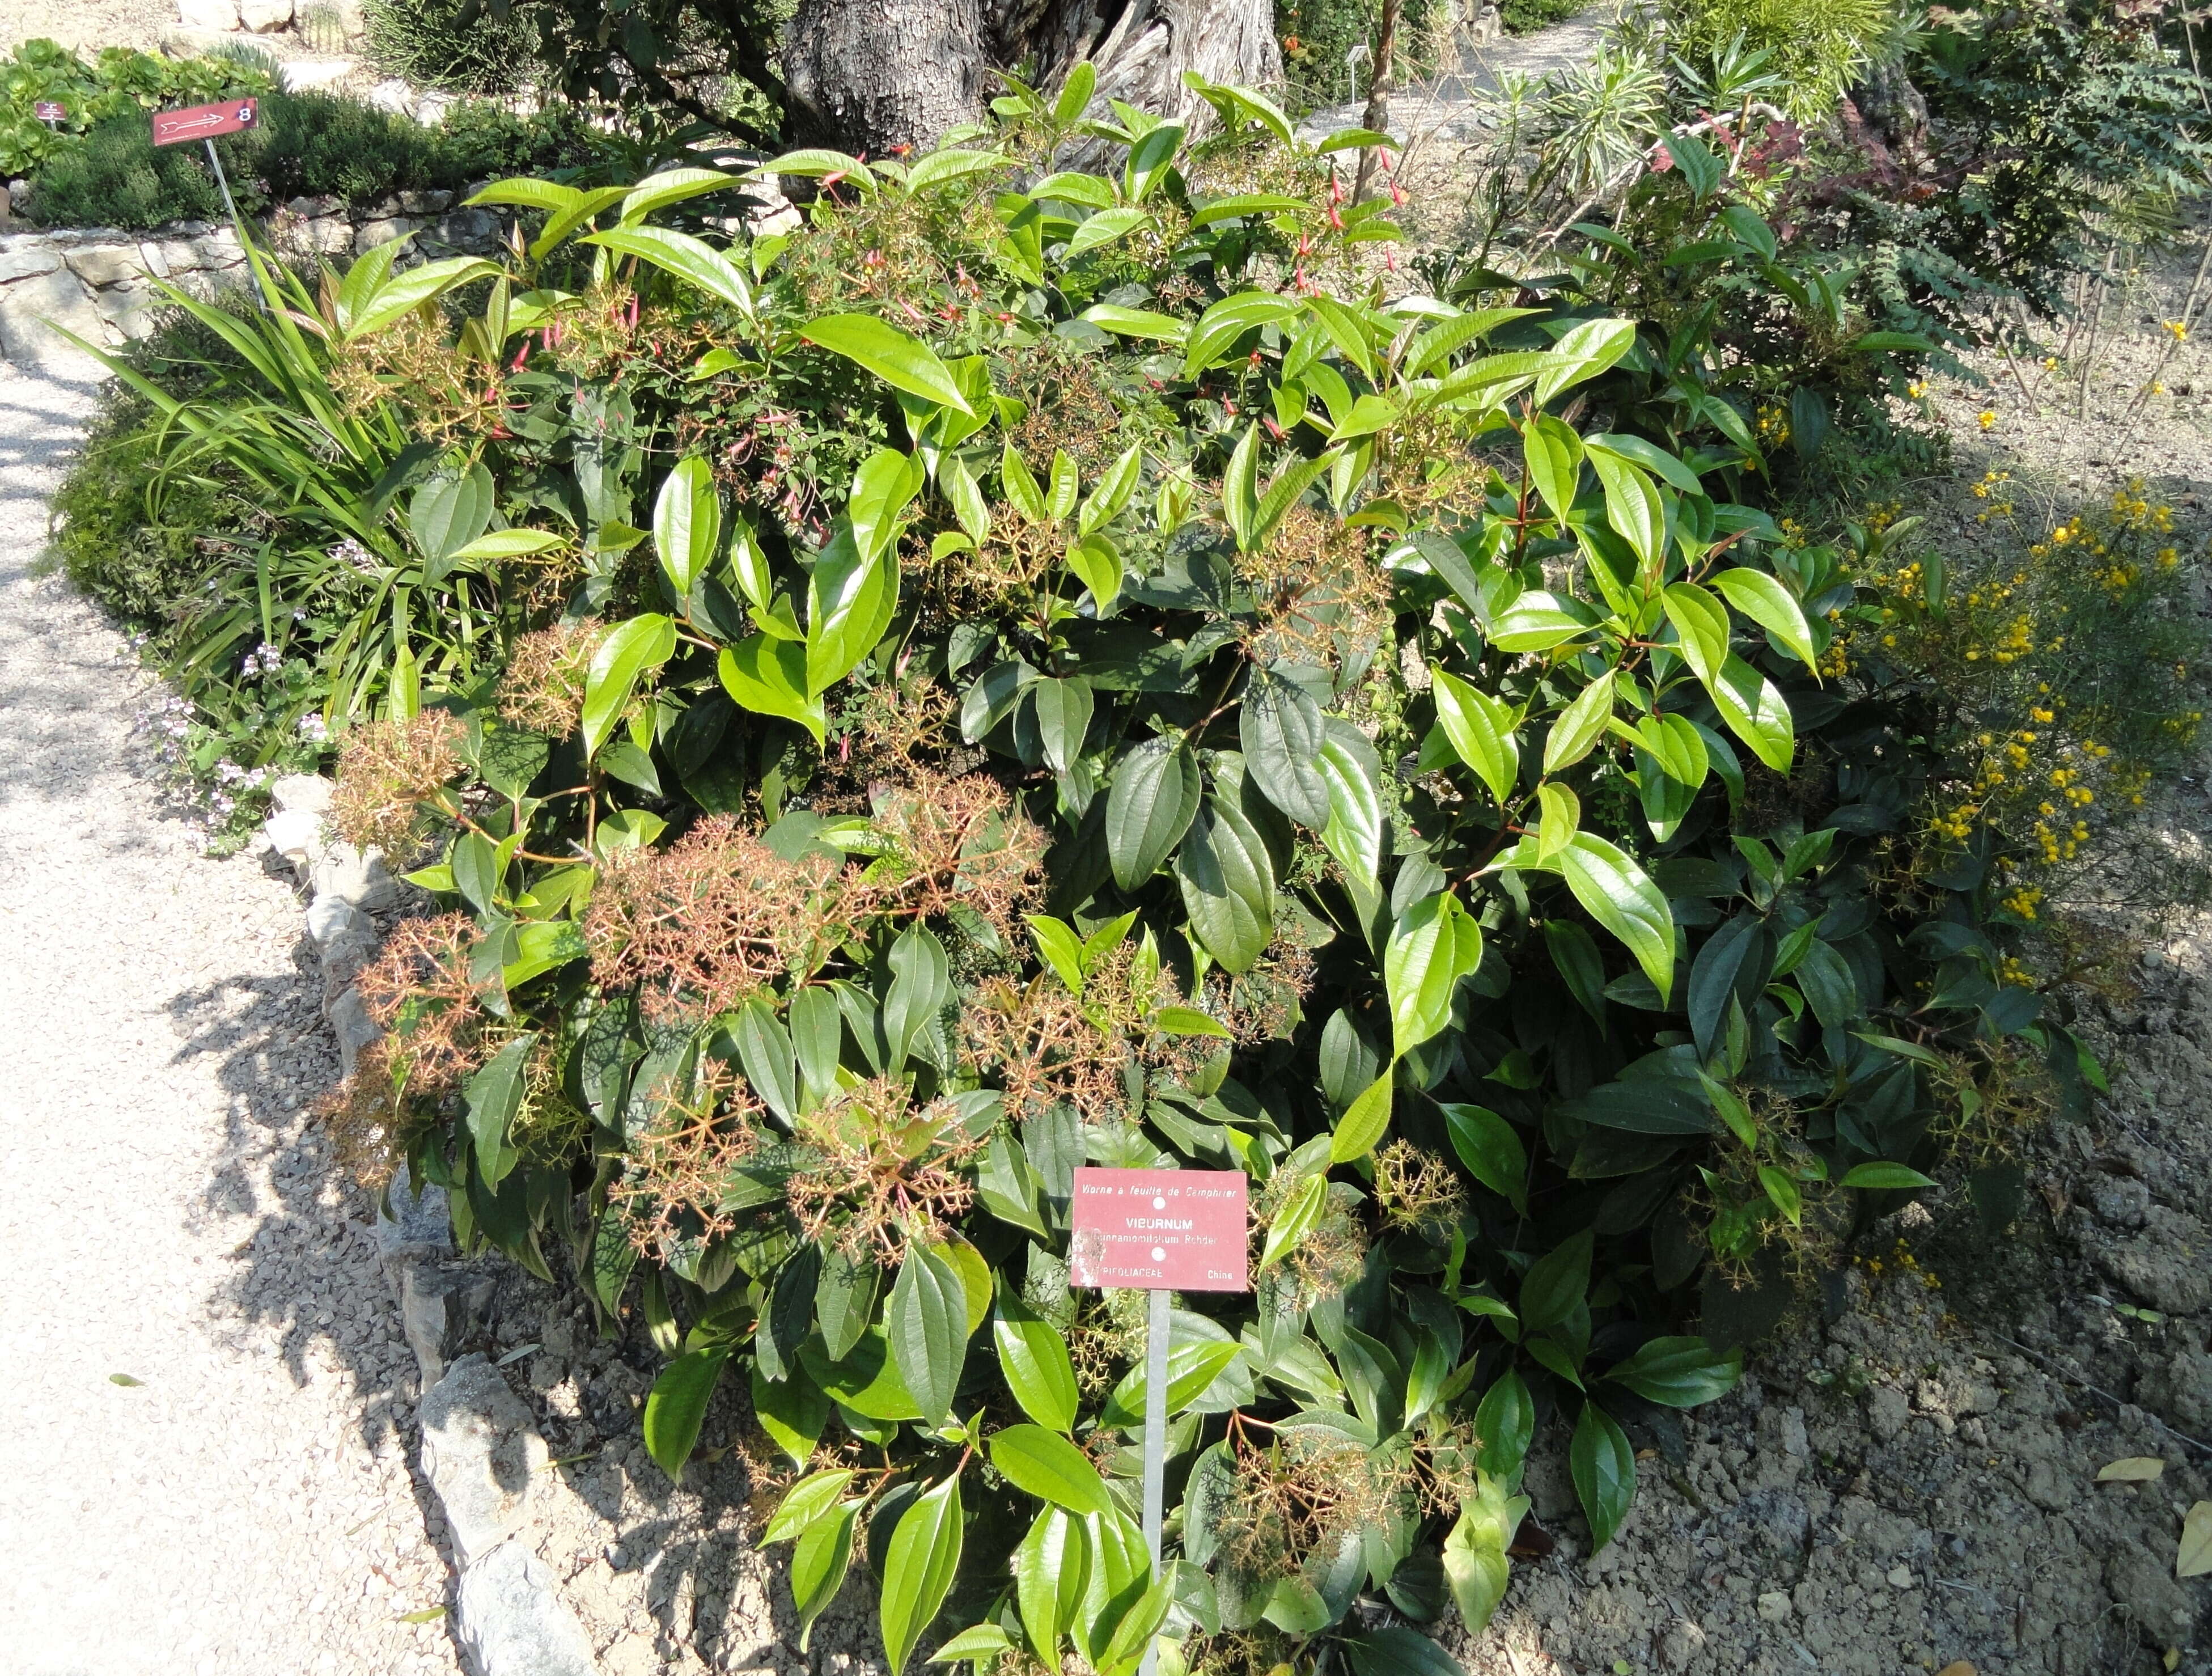 Sivun Viburnum cinnamomifolium Rehder kuva